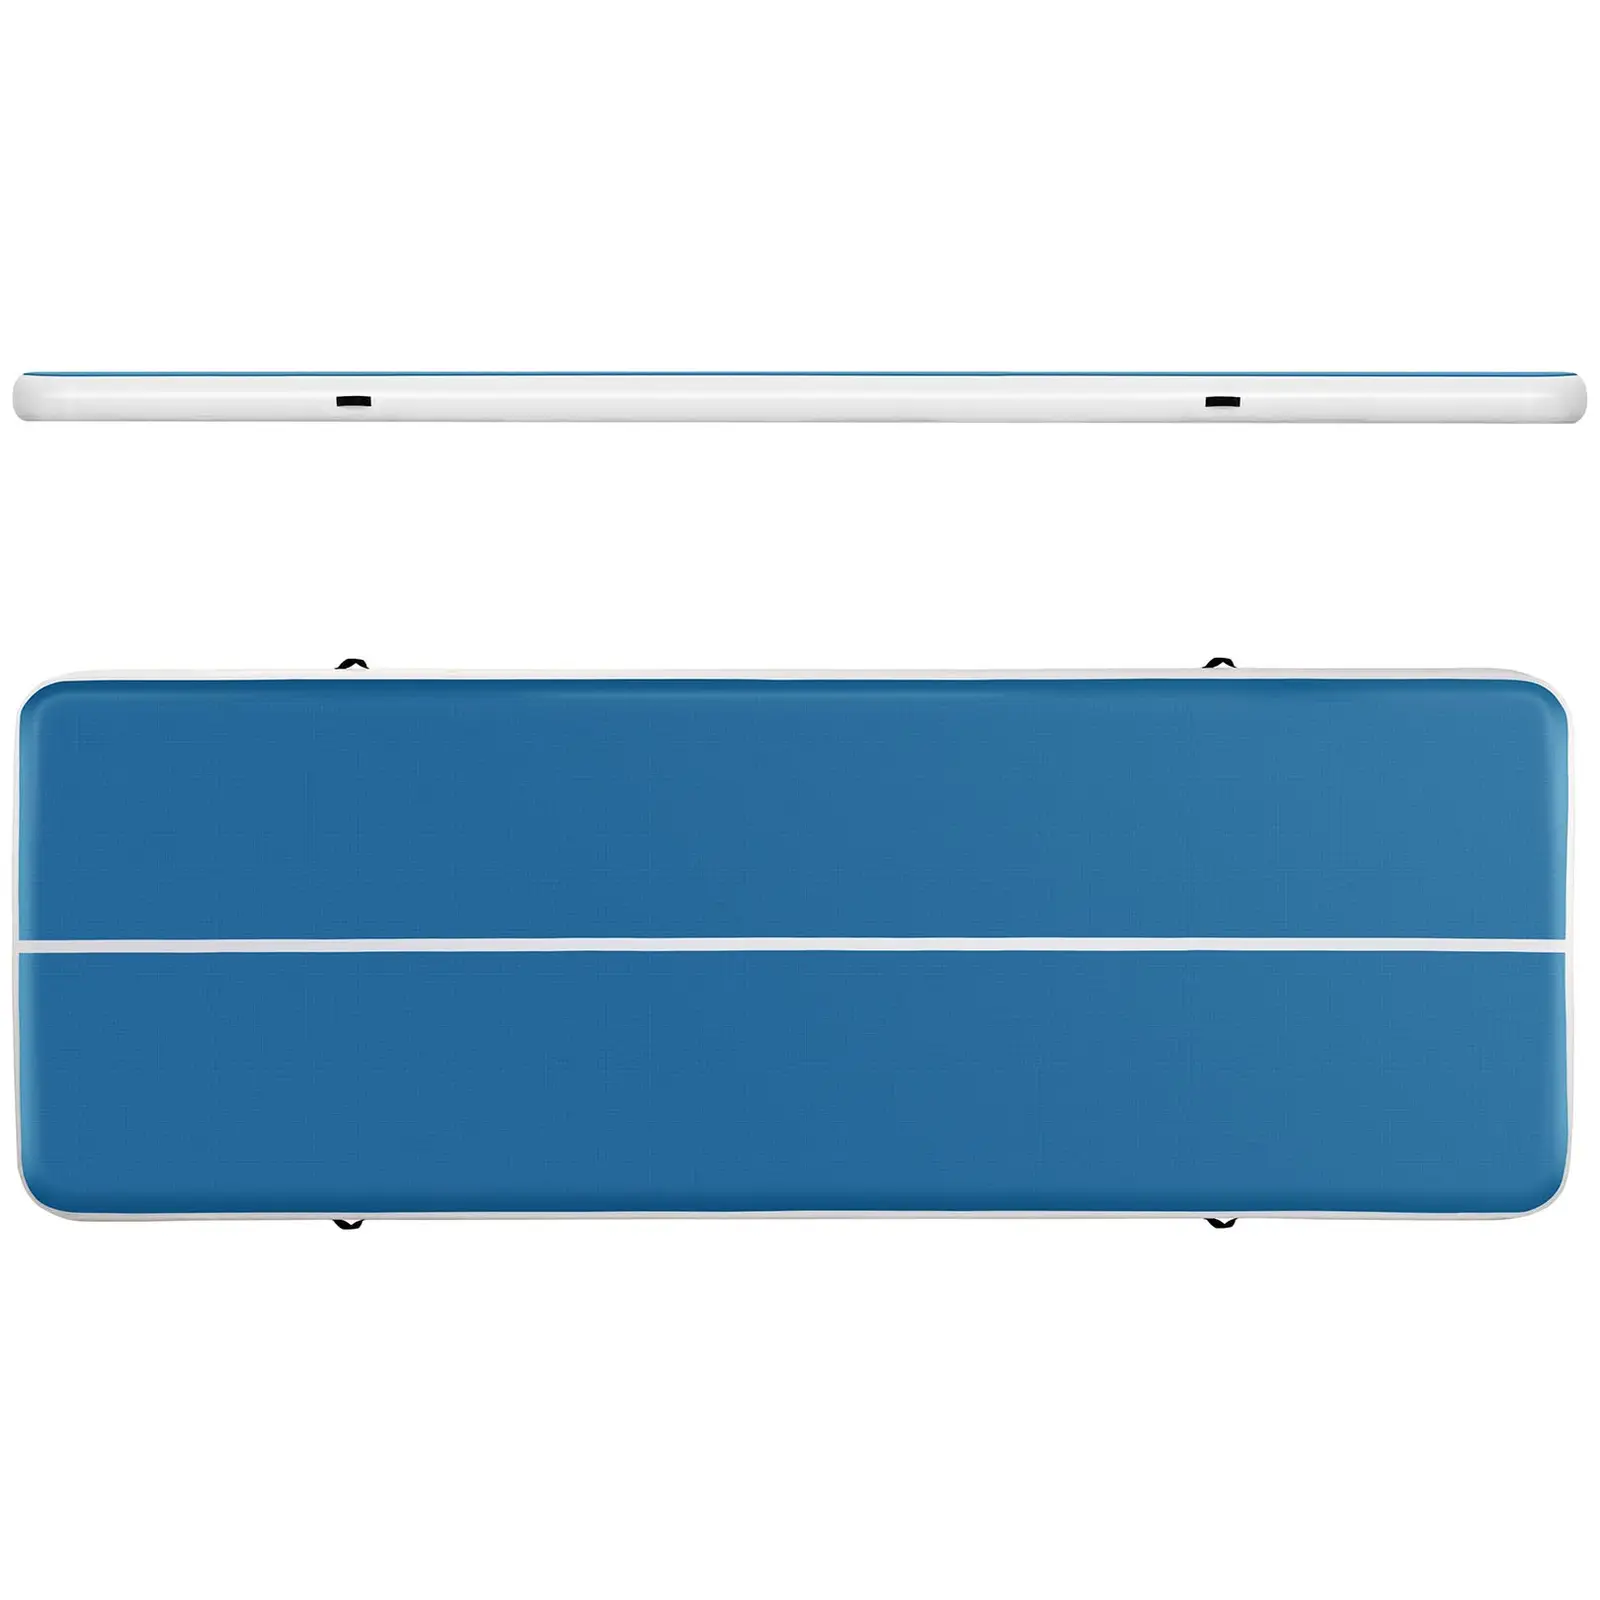 Tappeto da ginnastica gonfiabile - 600 x 200 x 20 cm - 400 kg - blu/bianco